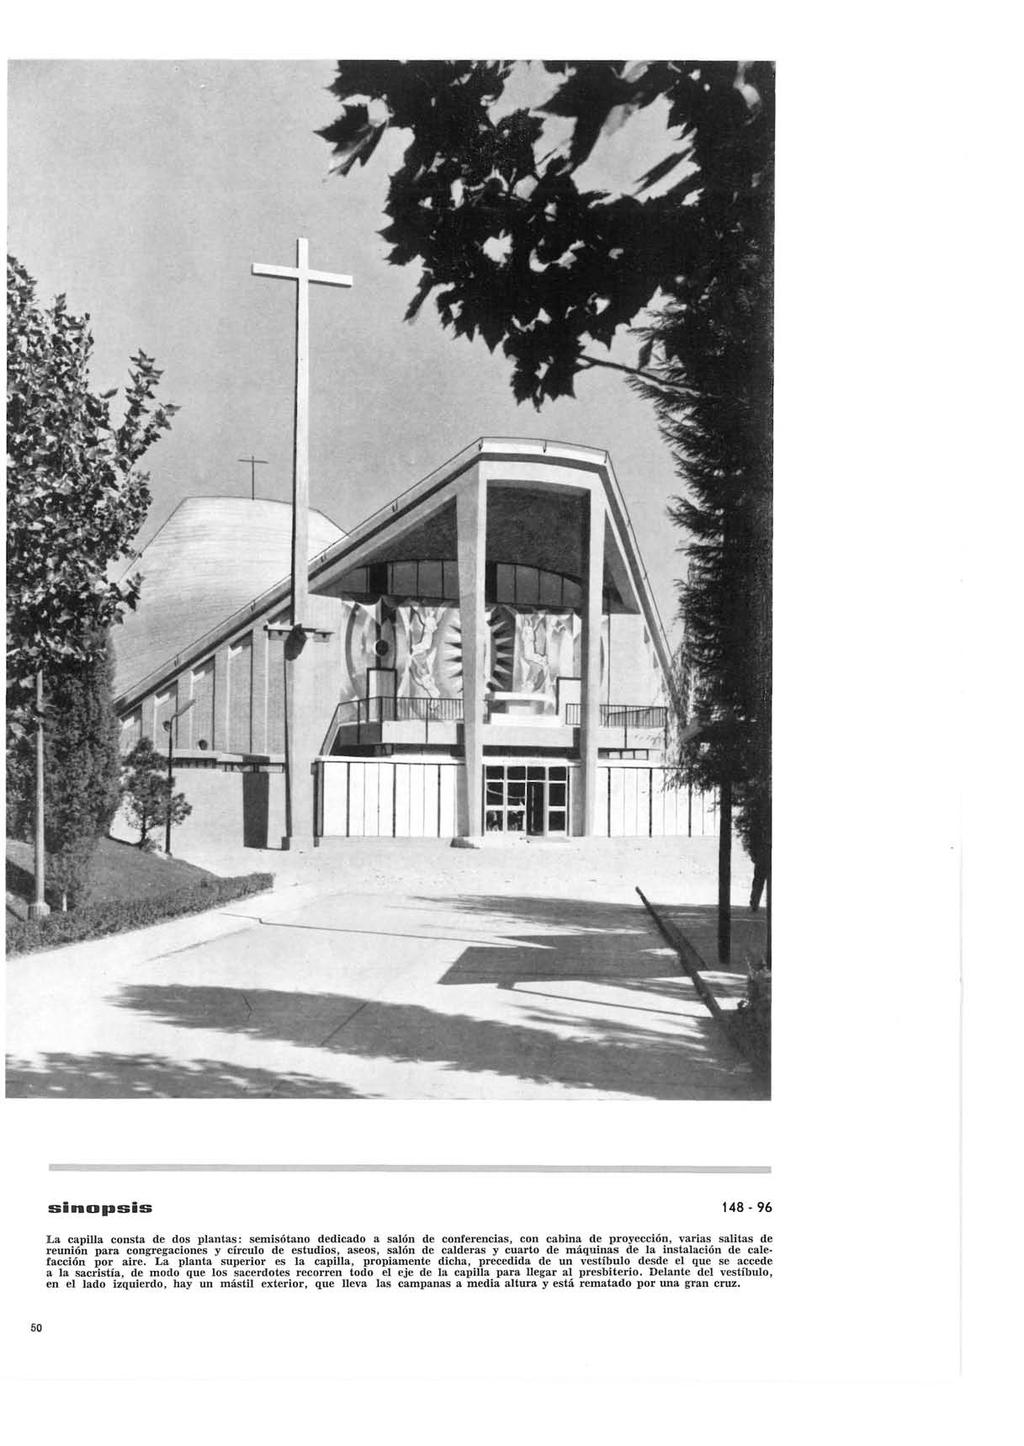 sinofasis 148-96 La capilla consta de dos plantas: semisótano dedicado a salón de conferencias, con cabina de proyección, varias salitas de reunión para congregaciones y círculo de estudios, aseos,